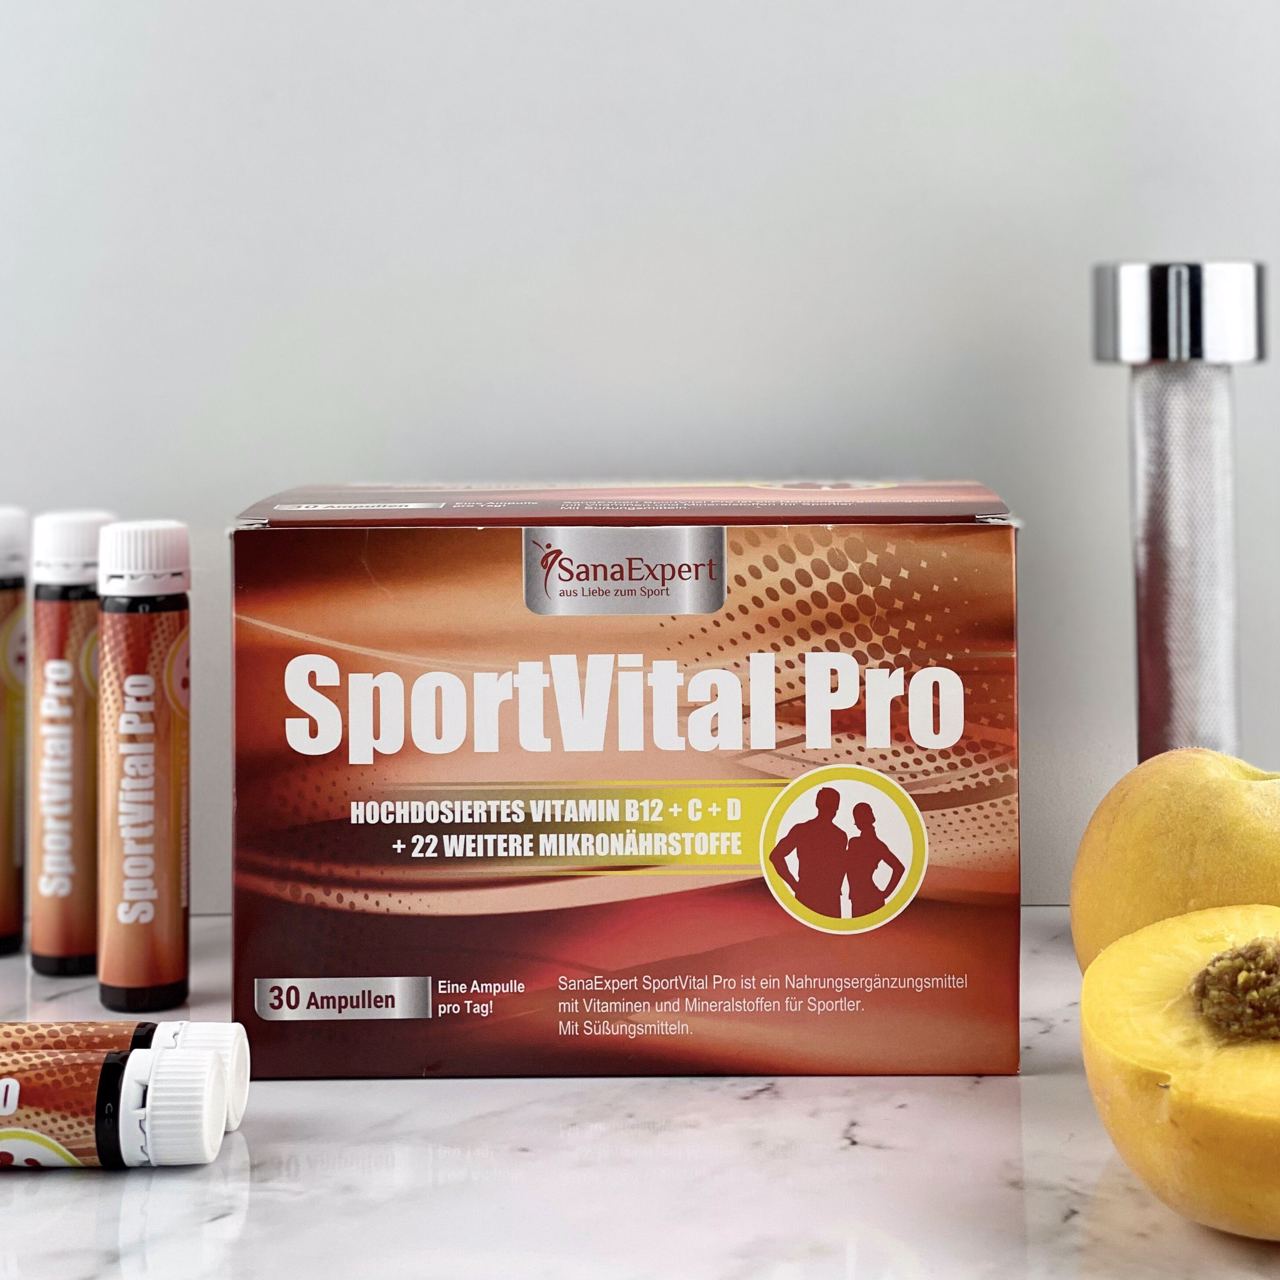 SportVital Pro Packung und Ampullen auf einer marmorierten Oberfläche, neben einer Wasserflasche und einer aufgeschnittenen gelben Frucht.